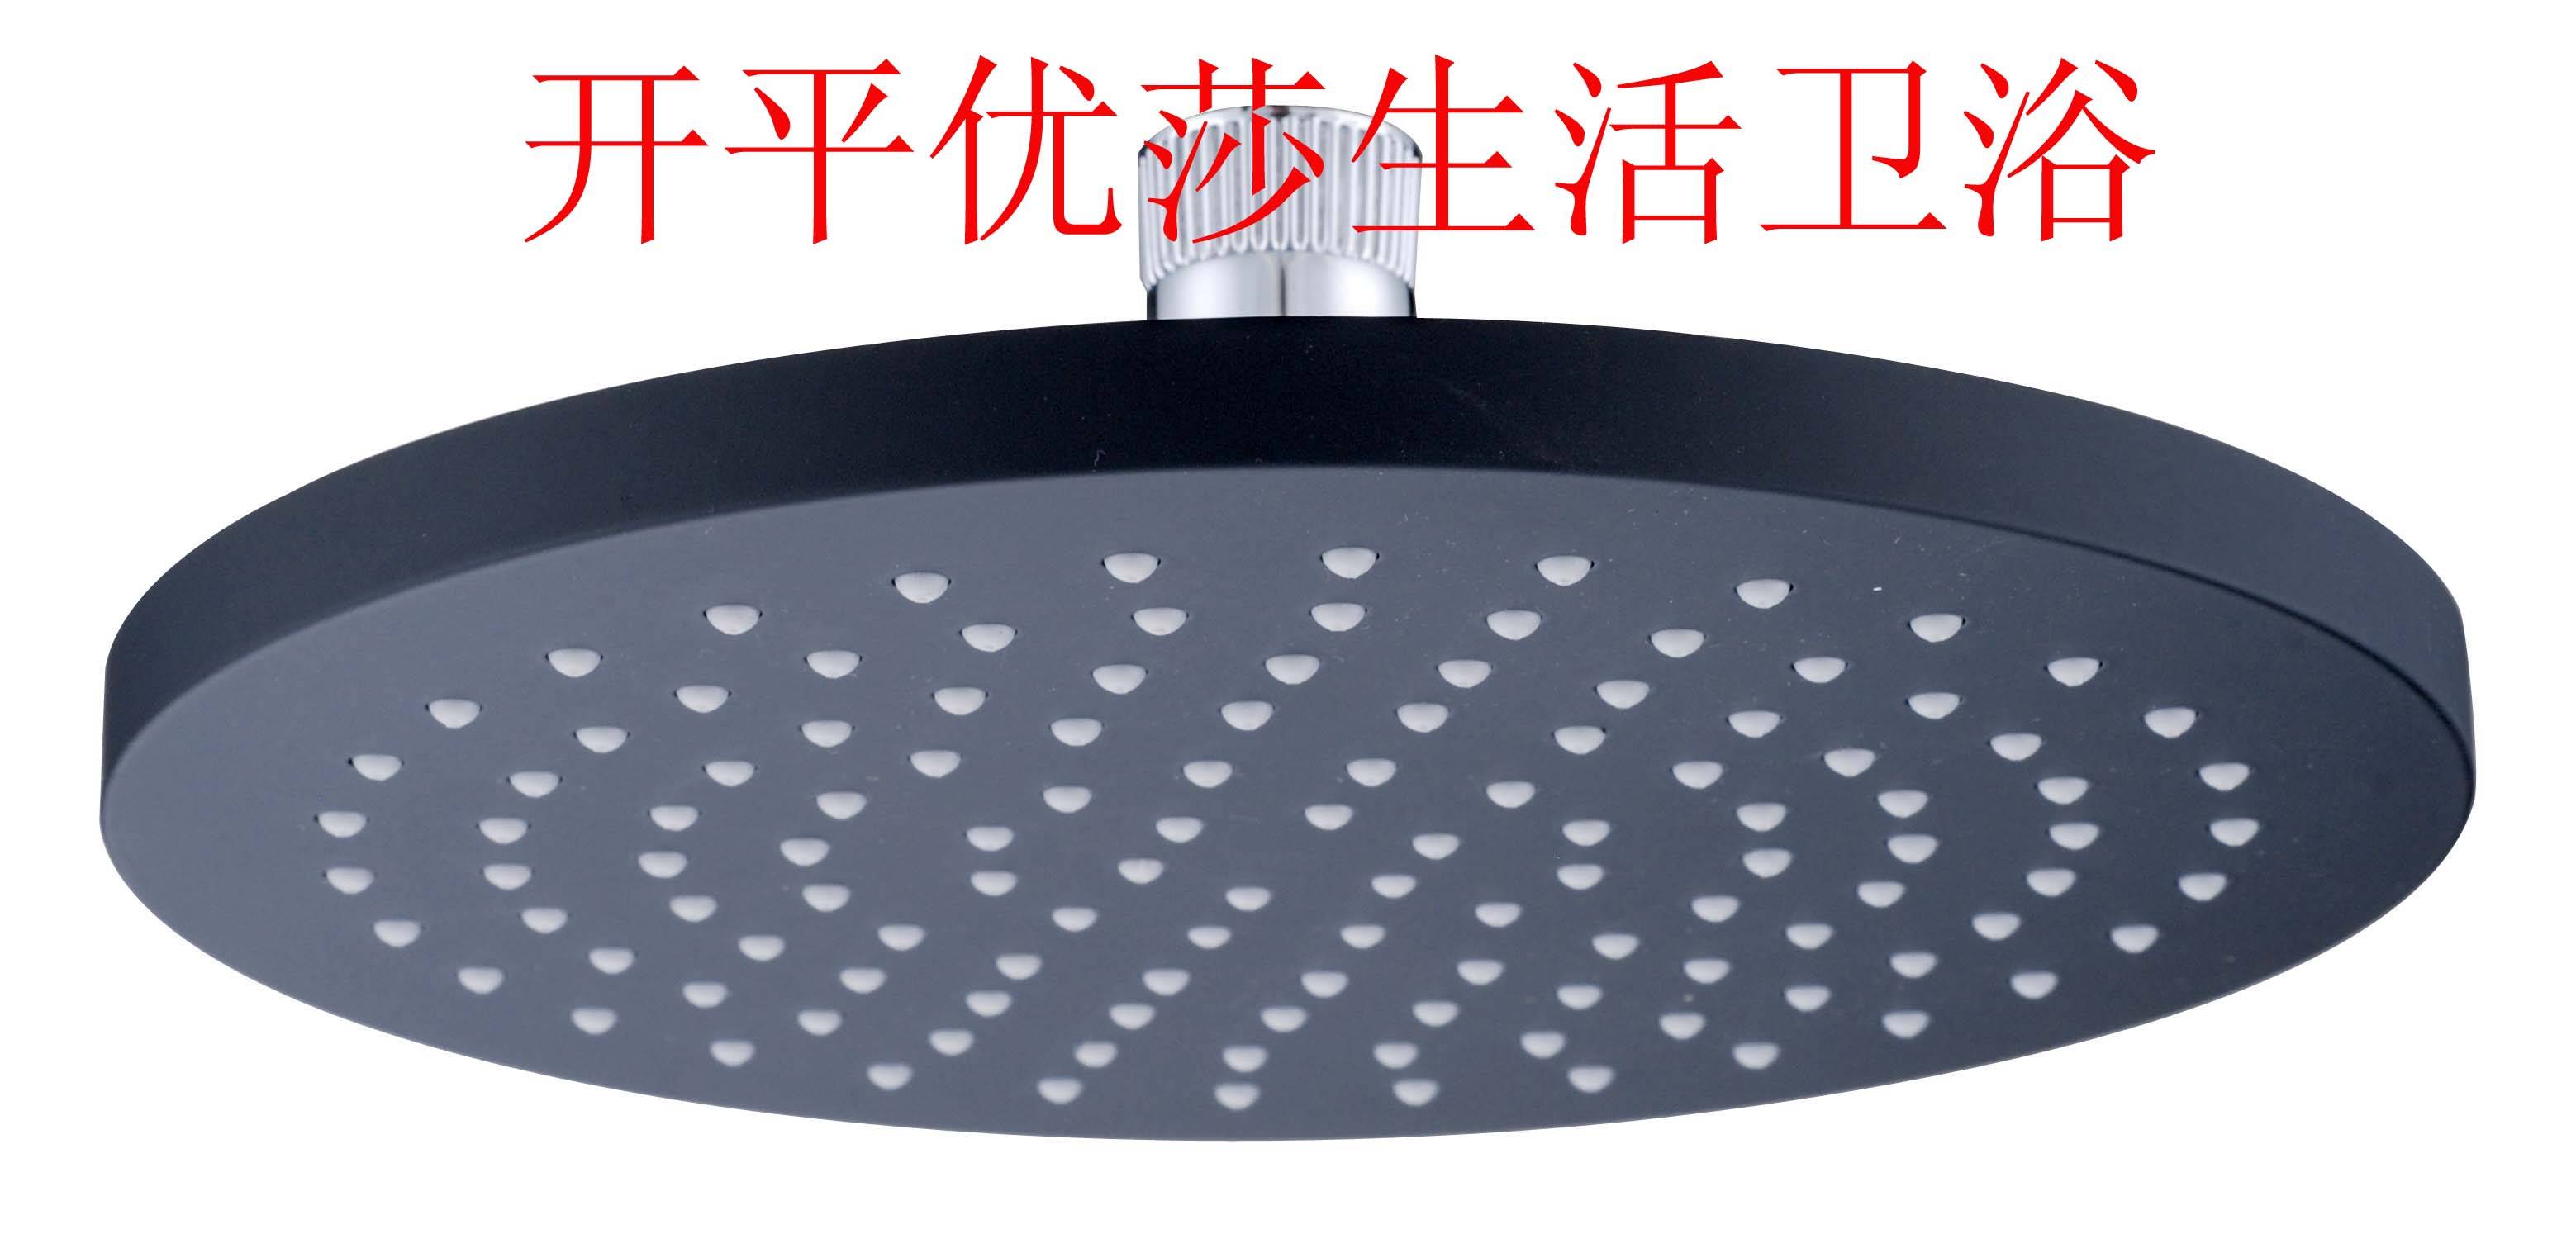 供应:8寸塑料顶喷(黑色) - 九正建材网(中国建材